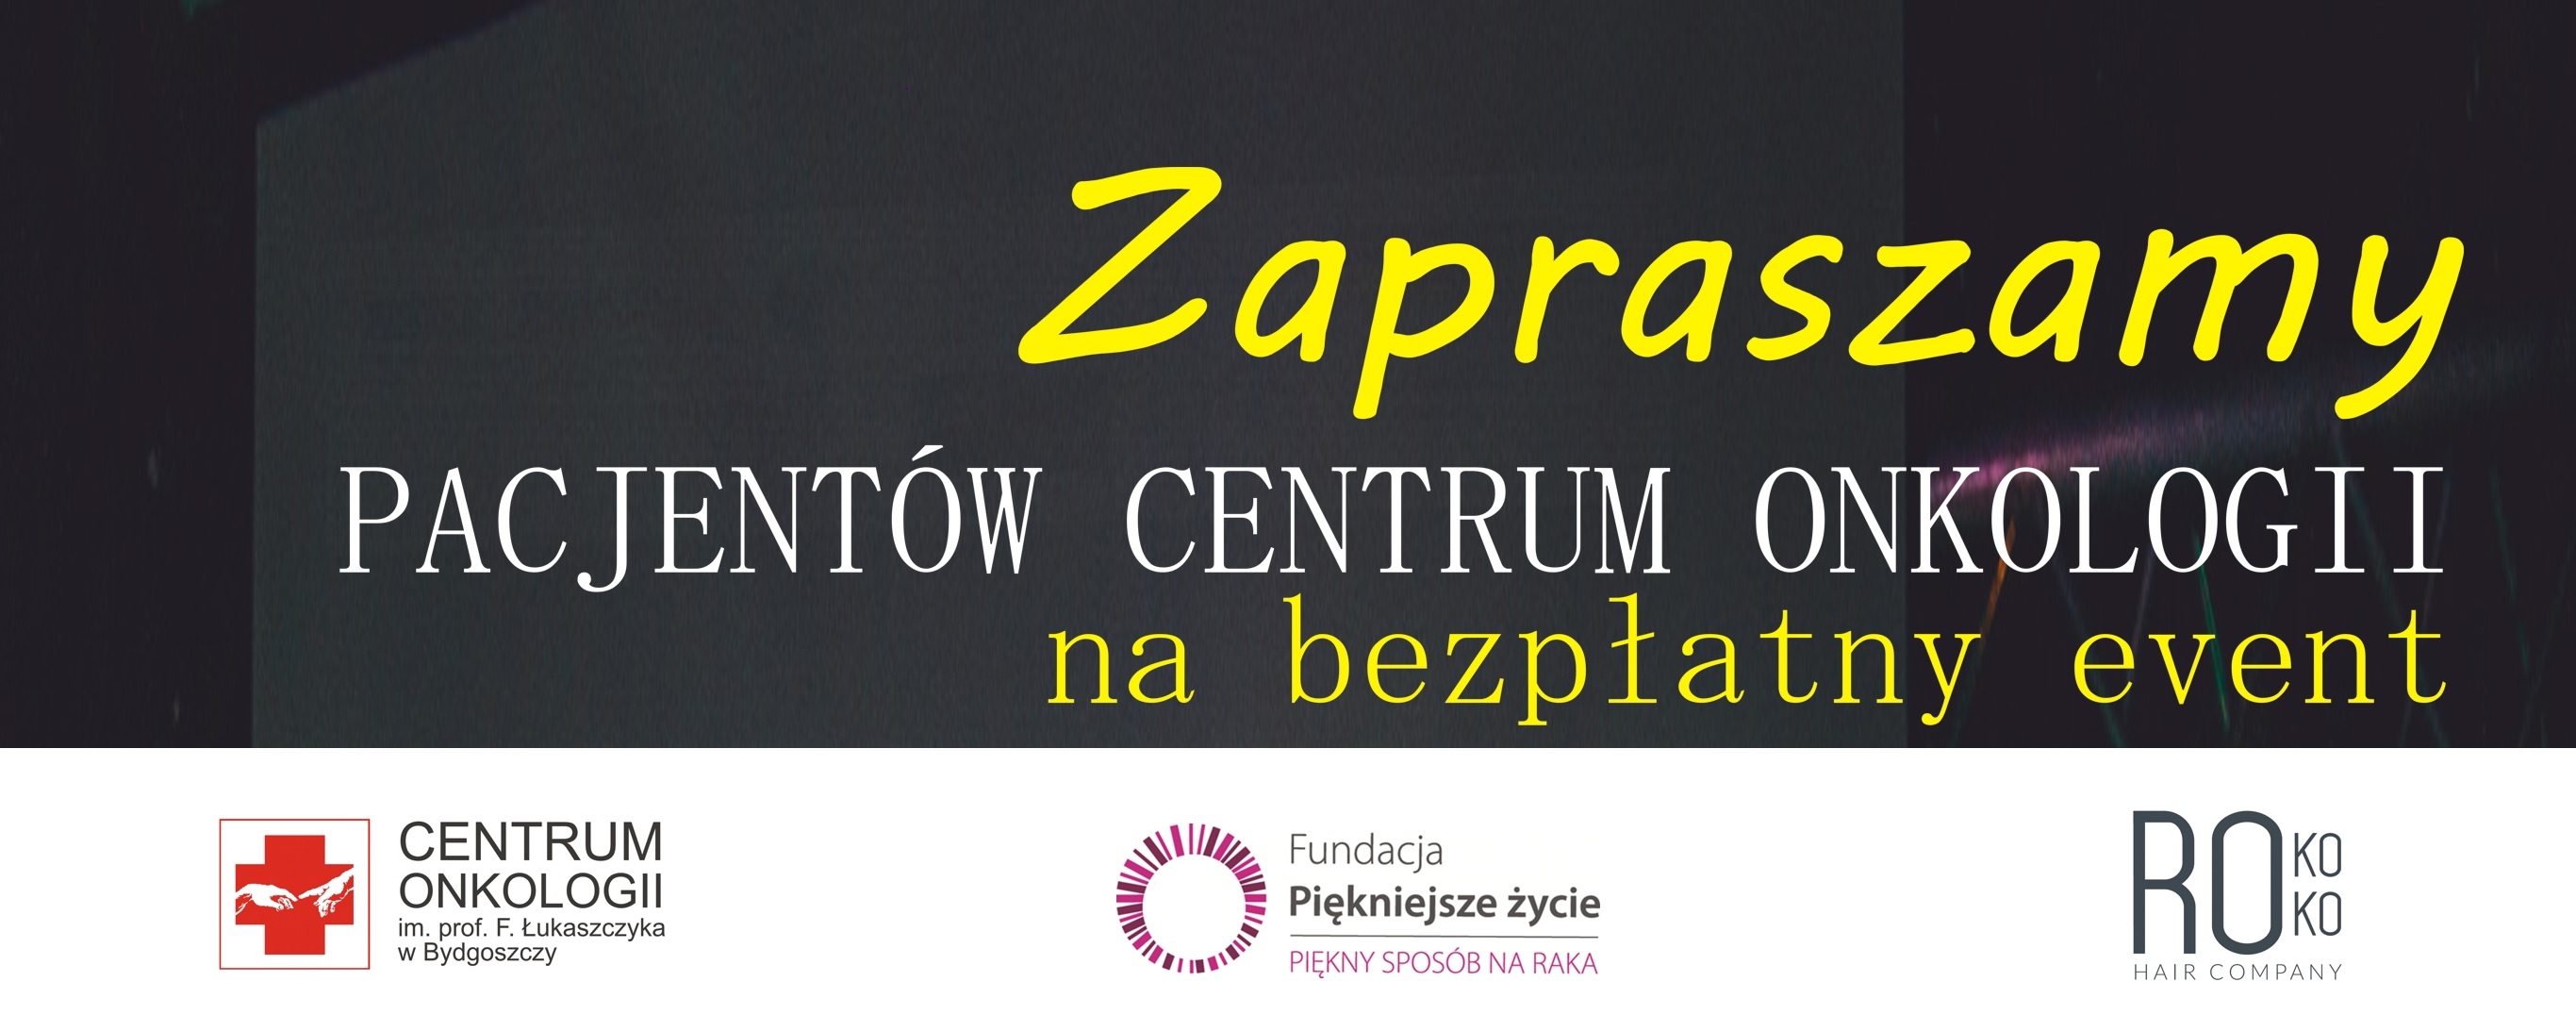 Event w Centrum Onkologii Bydgoszcz! 25.10 - Zapraszamy!